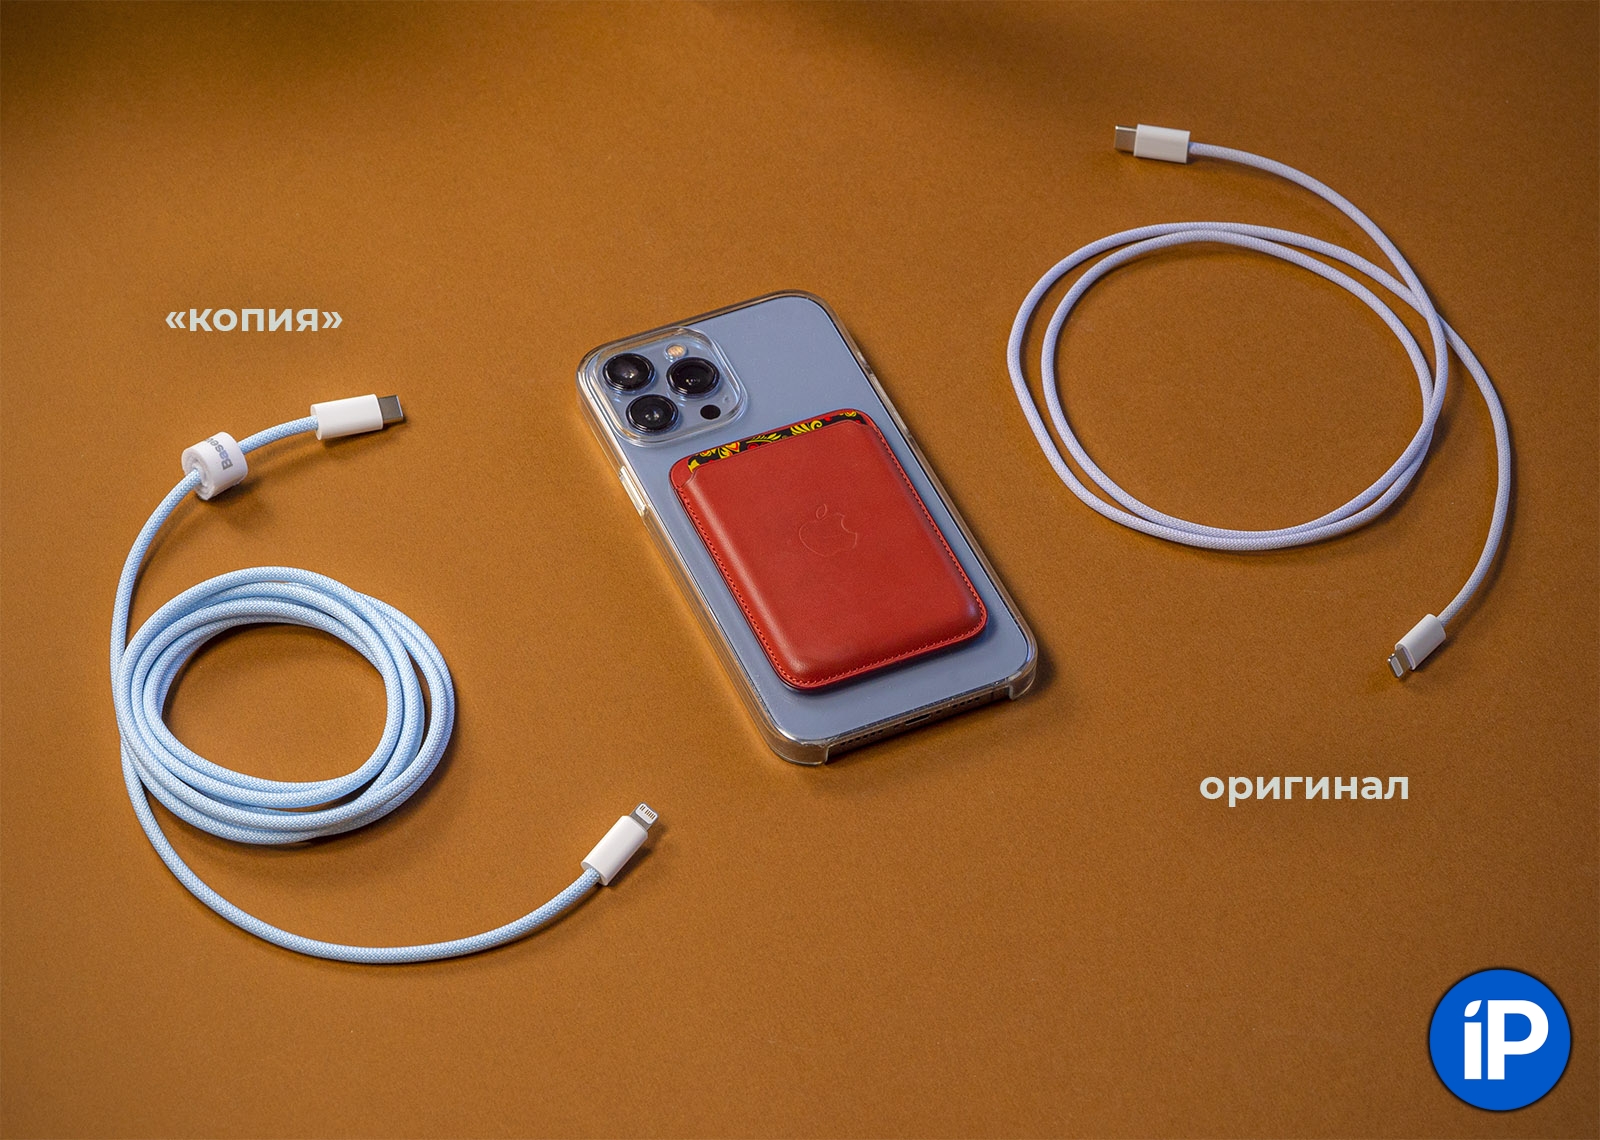 Сравнил оригинальный плетёный кабель для iPhone с аналогом за 420 рублей. И знаете, что…